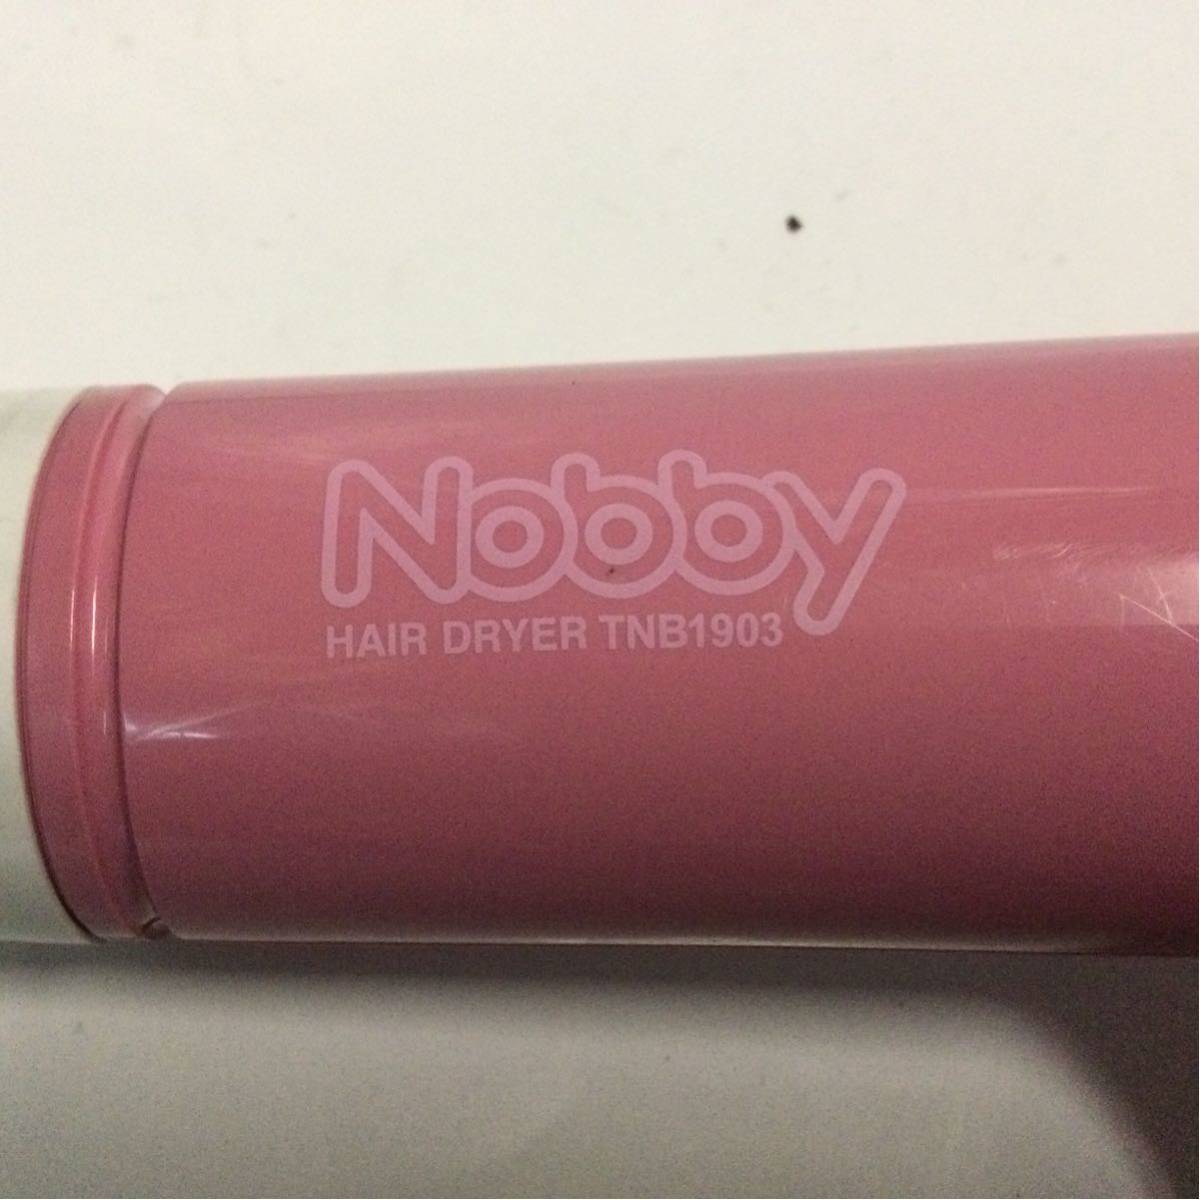 TESCOM фен Nobby TNB1903 розовый рабочий товар Tescom nobi.